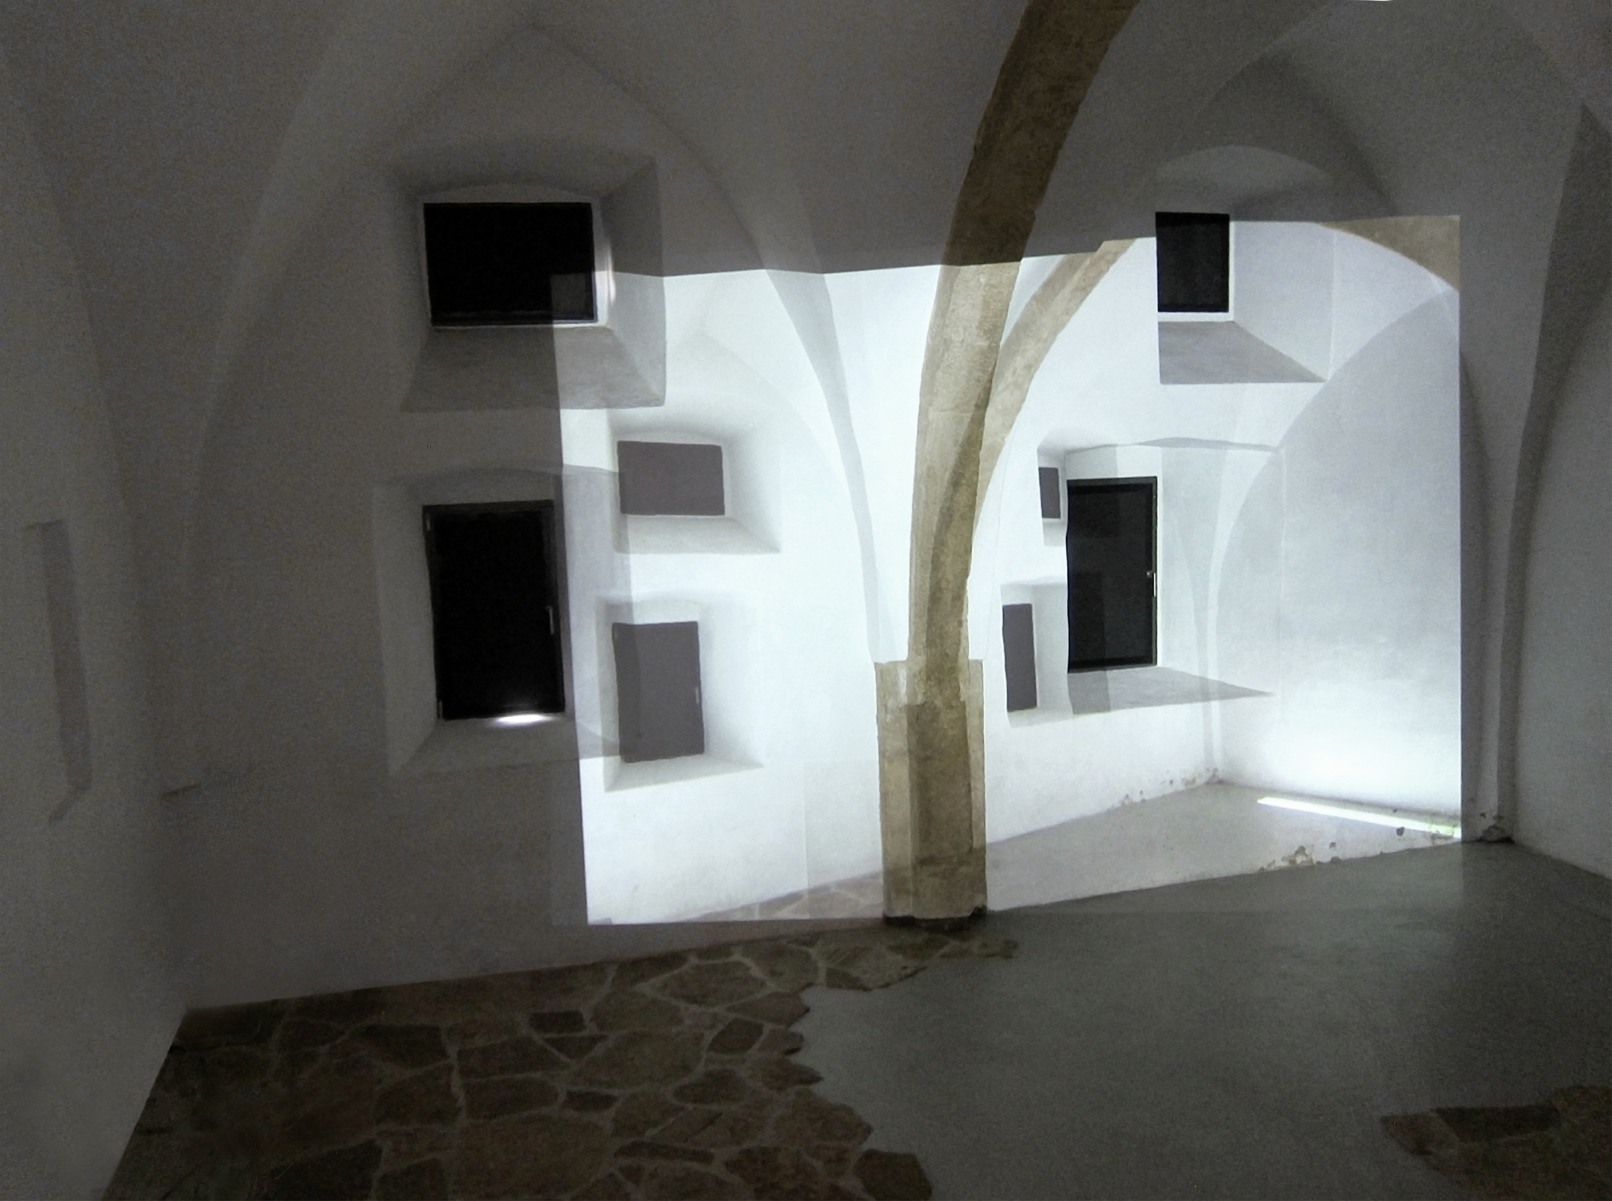 Experimental Setup I (Malevitch Style), 2014, test projection, DA Kunsthaus Kloster Gravenhorst, Germany